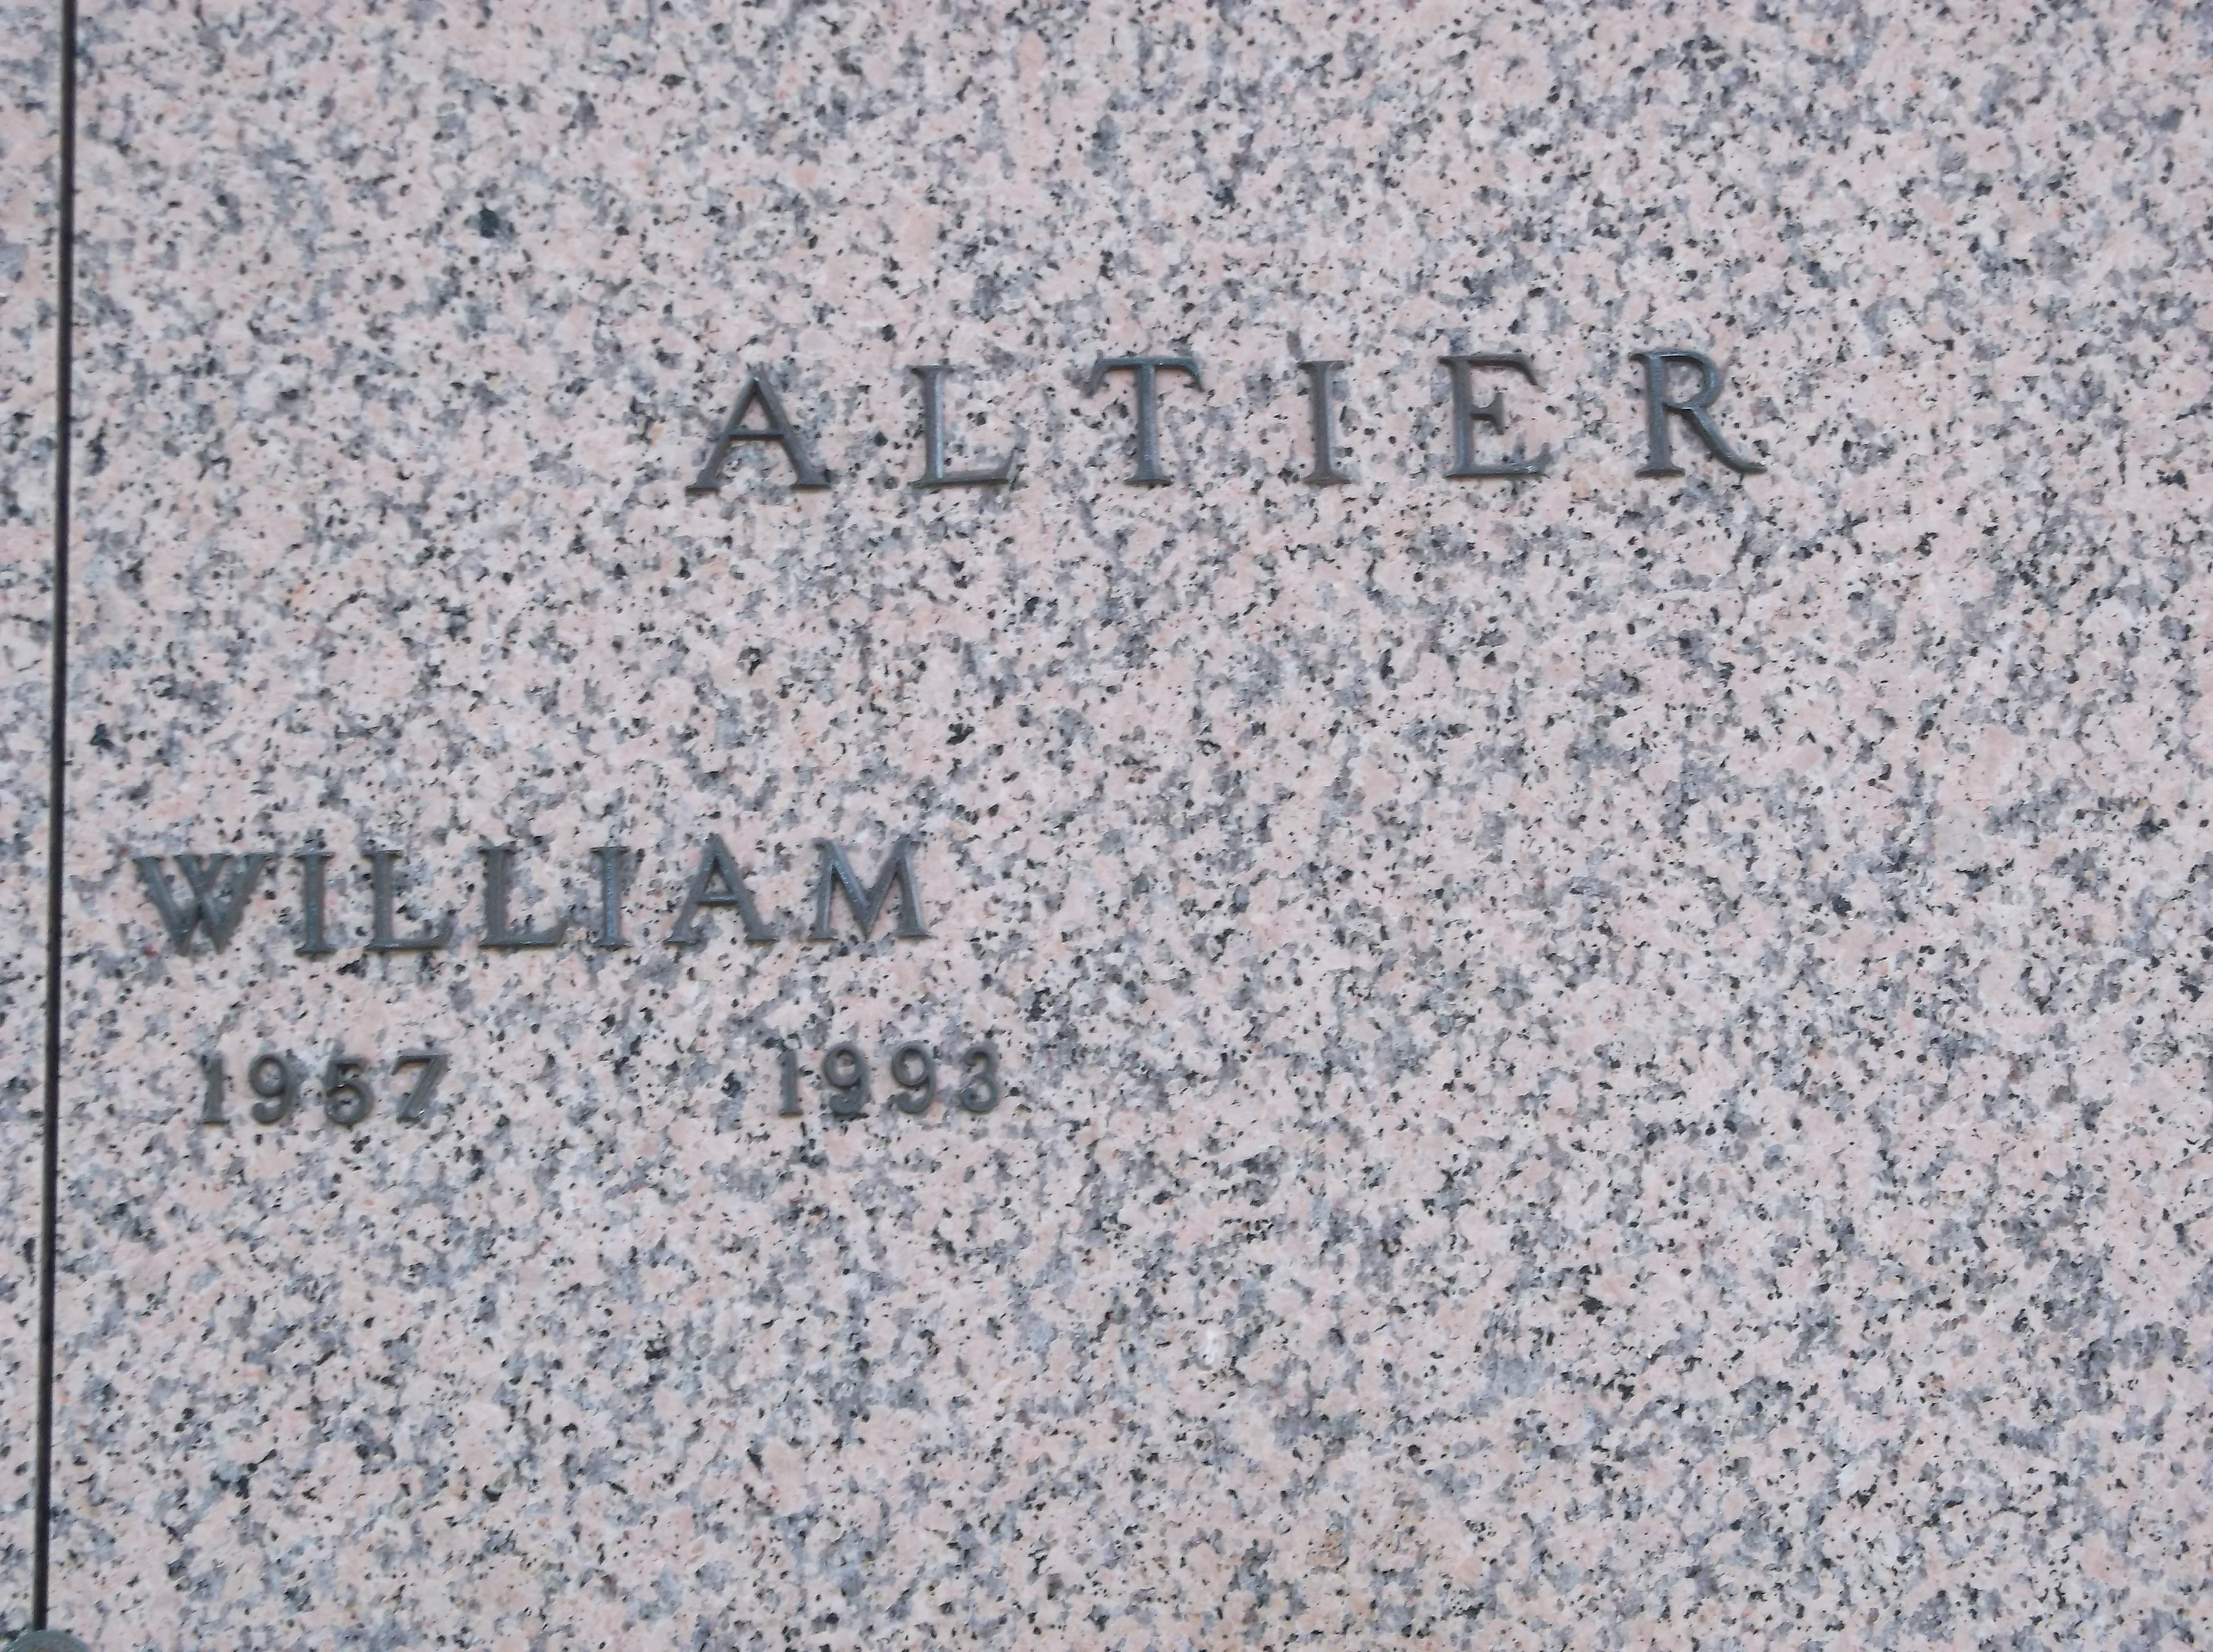 William Altier